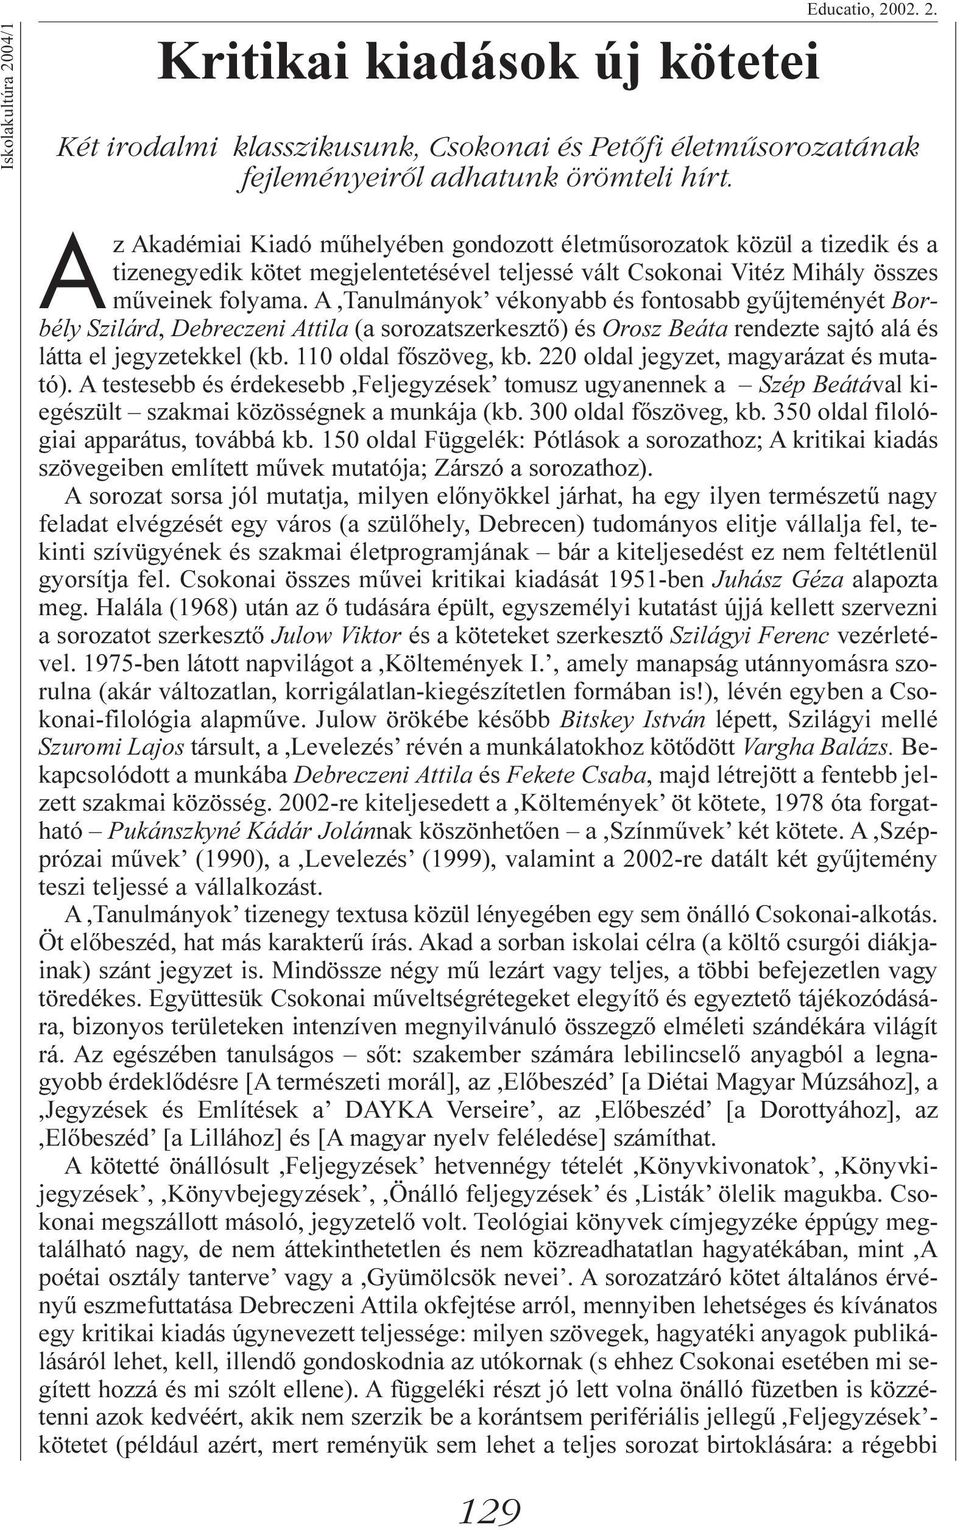 A,Tanulmányok vékonyabb és fontosabb gyûjteményét Borbély Szilárd, Debreczeni Attila (a sorozatszerkesztõ) és Orosz Beáta rendezte sajtó alá és látta el jegyzetekkel (kb. 110 oldal fõszöveg, kb.